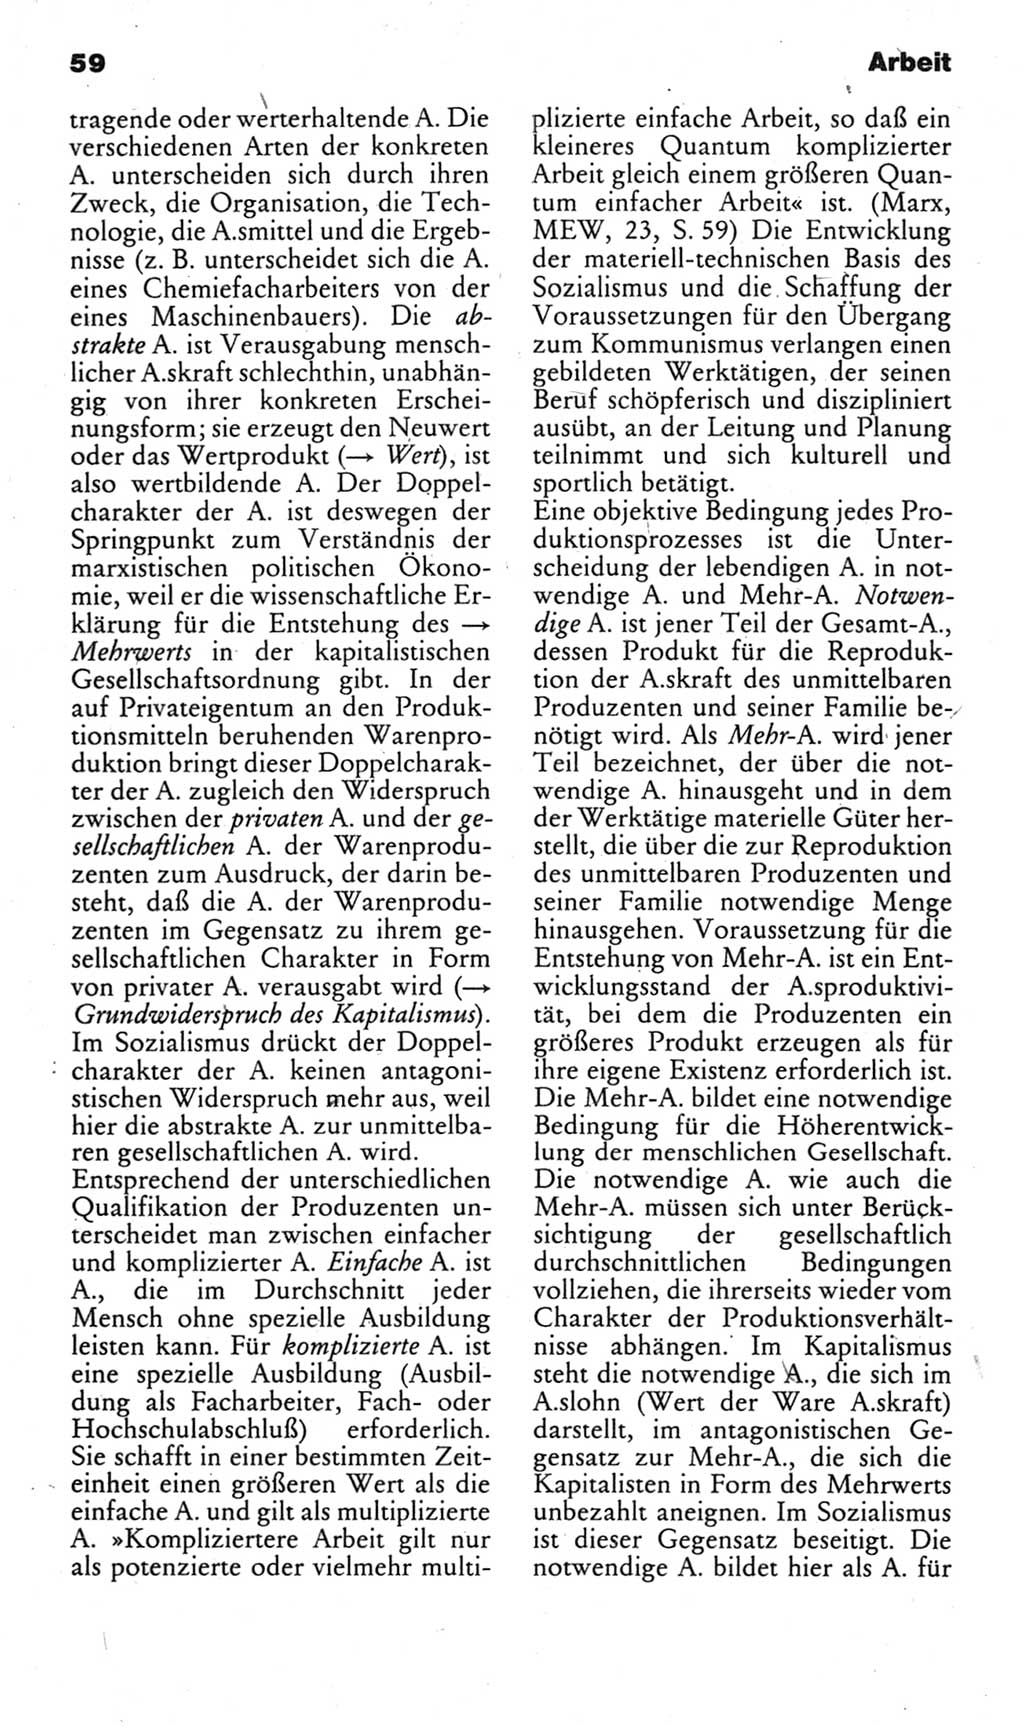 Kleines politisches Wörterbuch [Deutsche Demokratische Republik (DDR)] 1983, Seite 59 (Kl. pol. Wb. DDR 1983, S. 59)